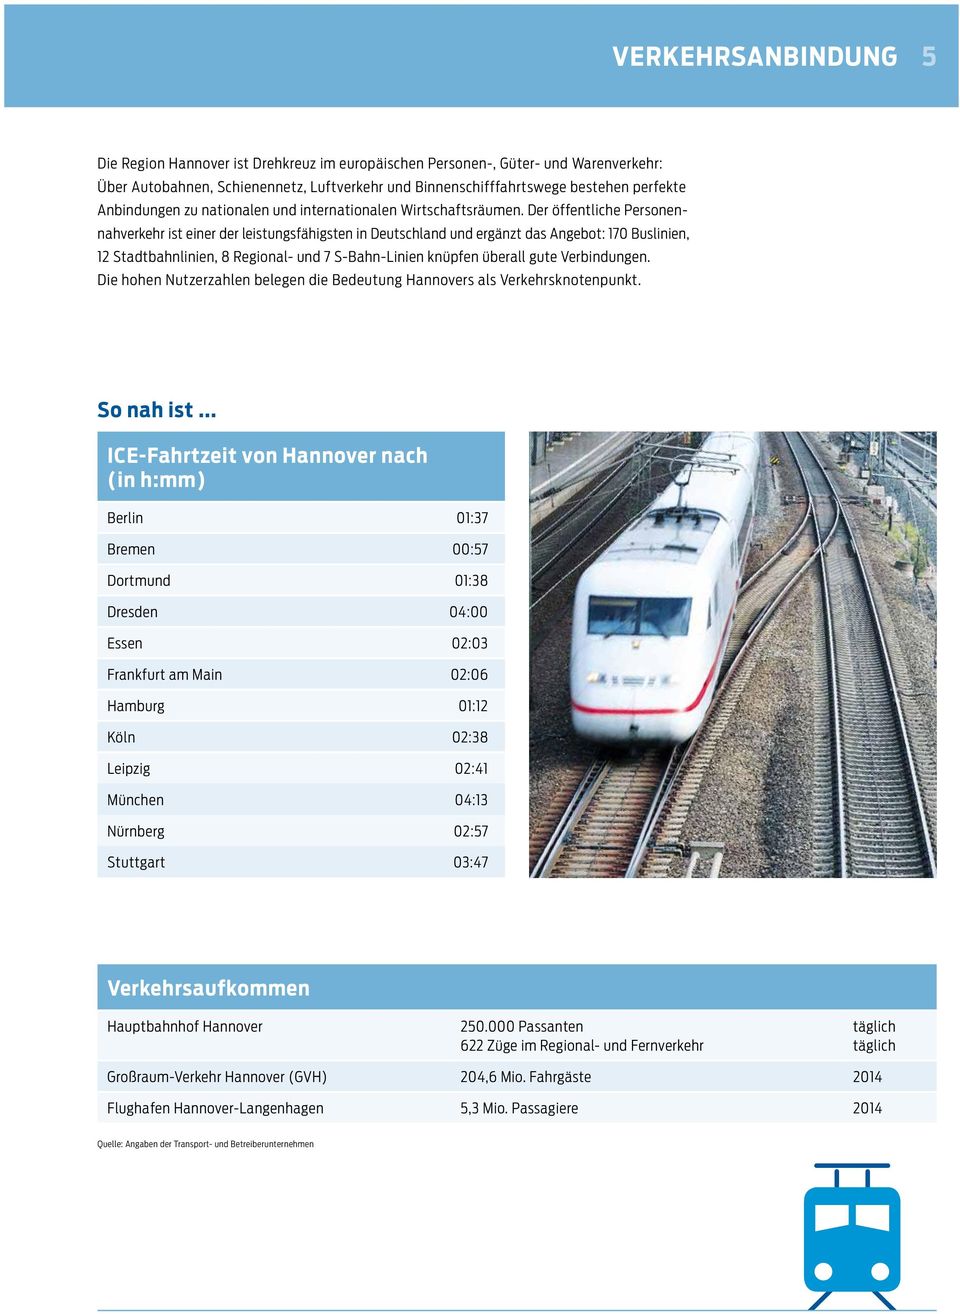 Der öffentliche Personennahverkehr ist einer der leistungsfähigsten in Deutschland und ergänzt das Angebot: 170 Buslinien, 12 Stadtbahnlinien, 8 Regional- und 7 S-Bahn-Linien knüpfen überall gute